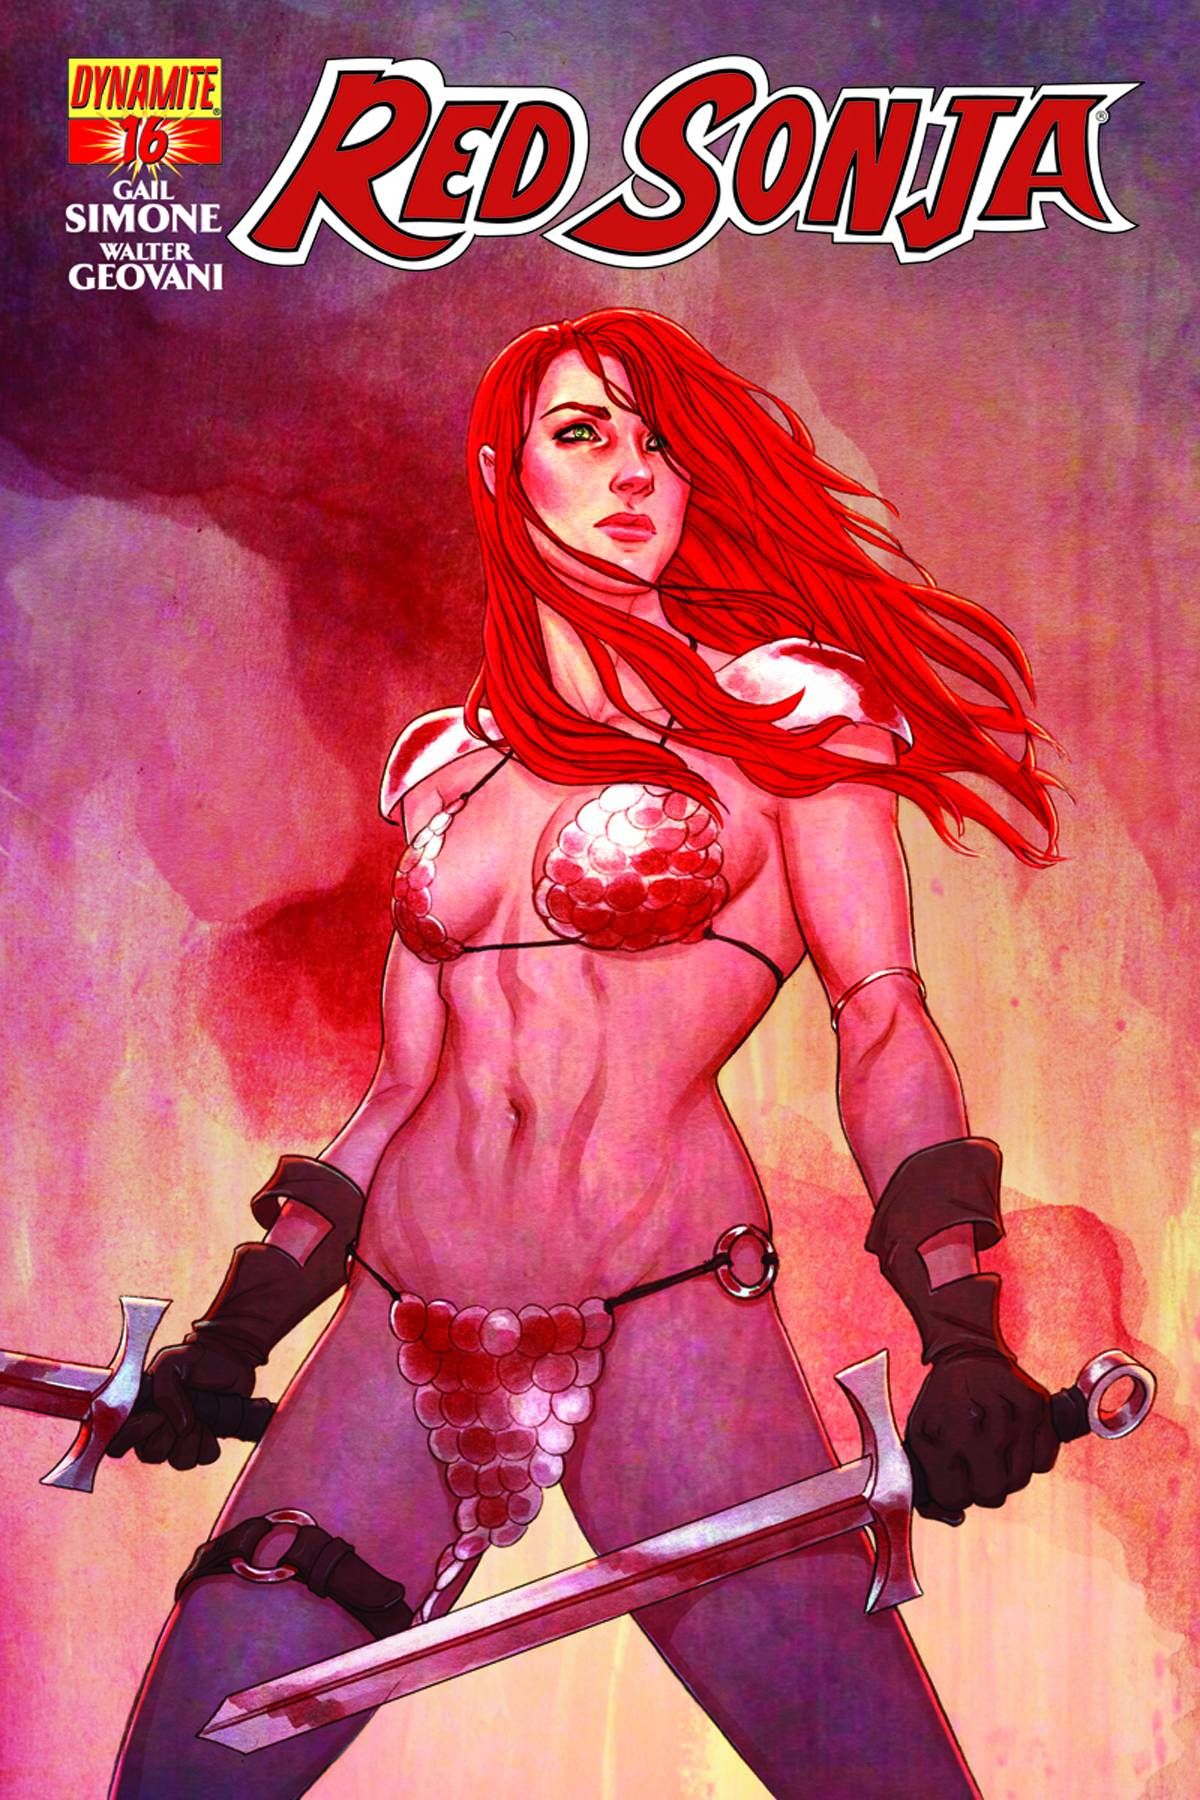 Red Sonja #16 Comic